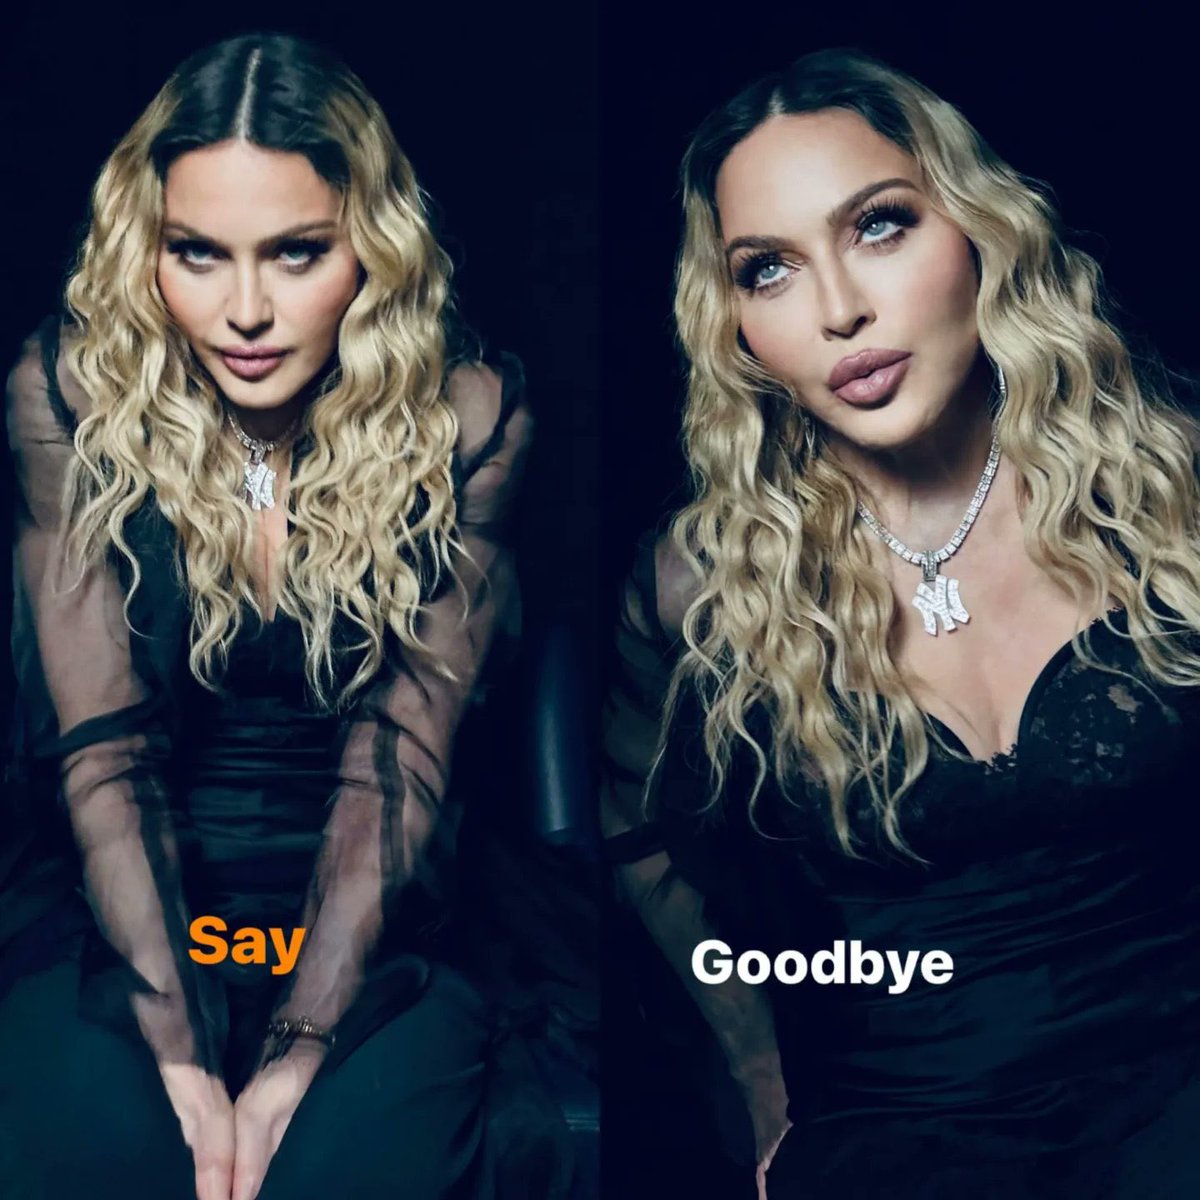 “O show acabou, diga adeus”
 
Novas atualizações da Madonna no Instagram 🥹